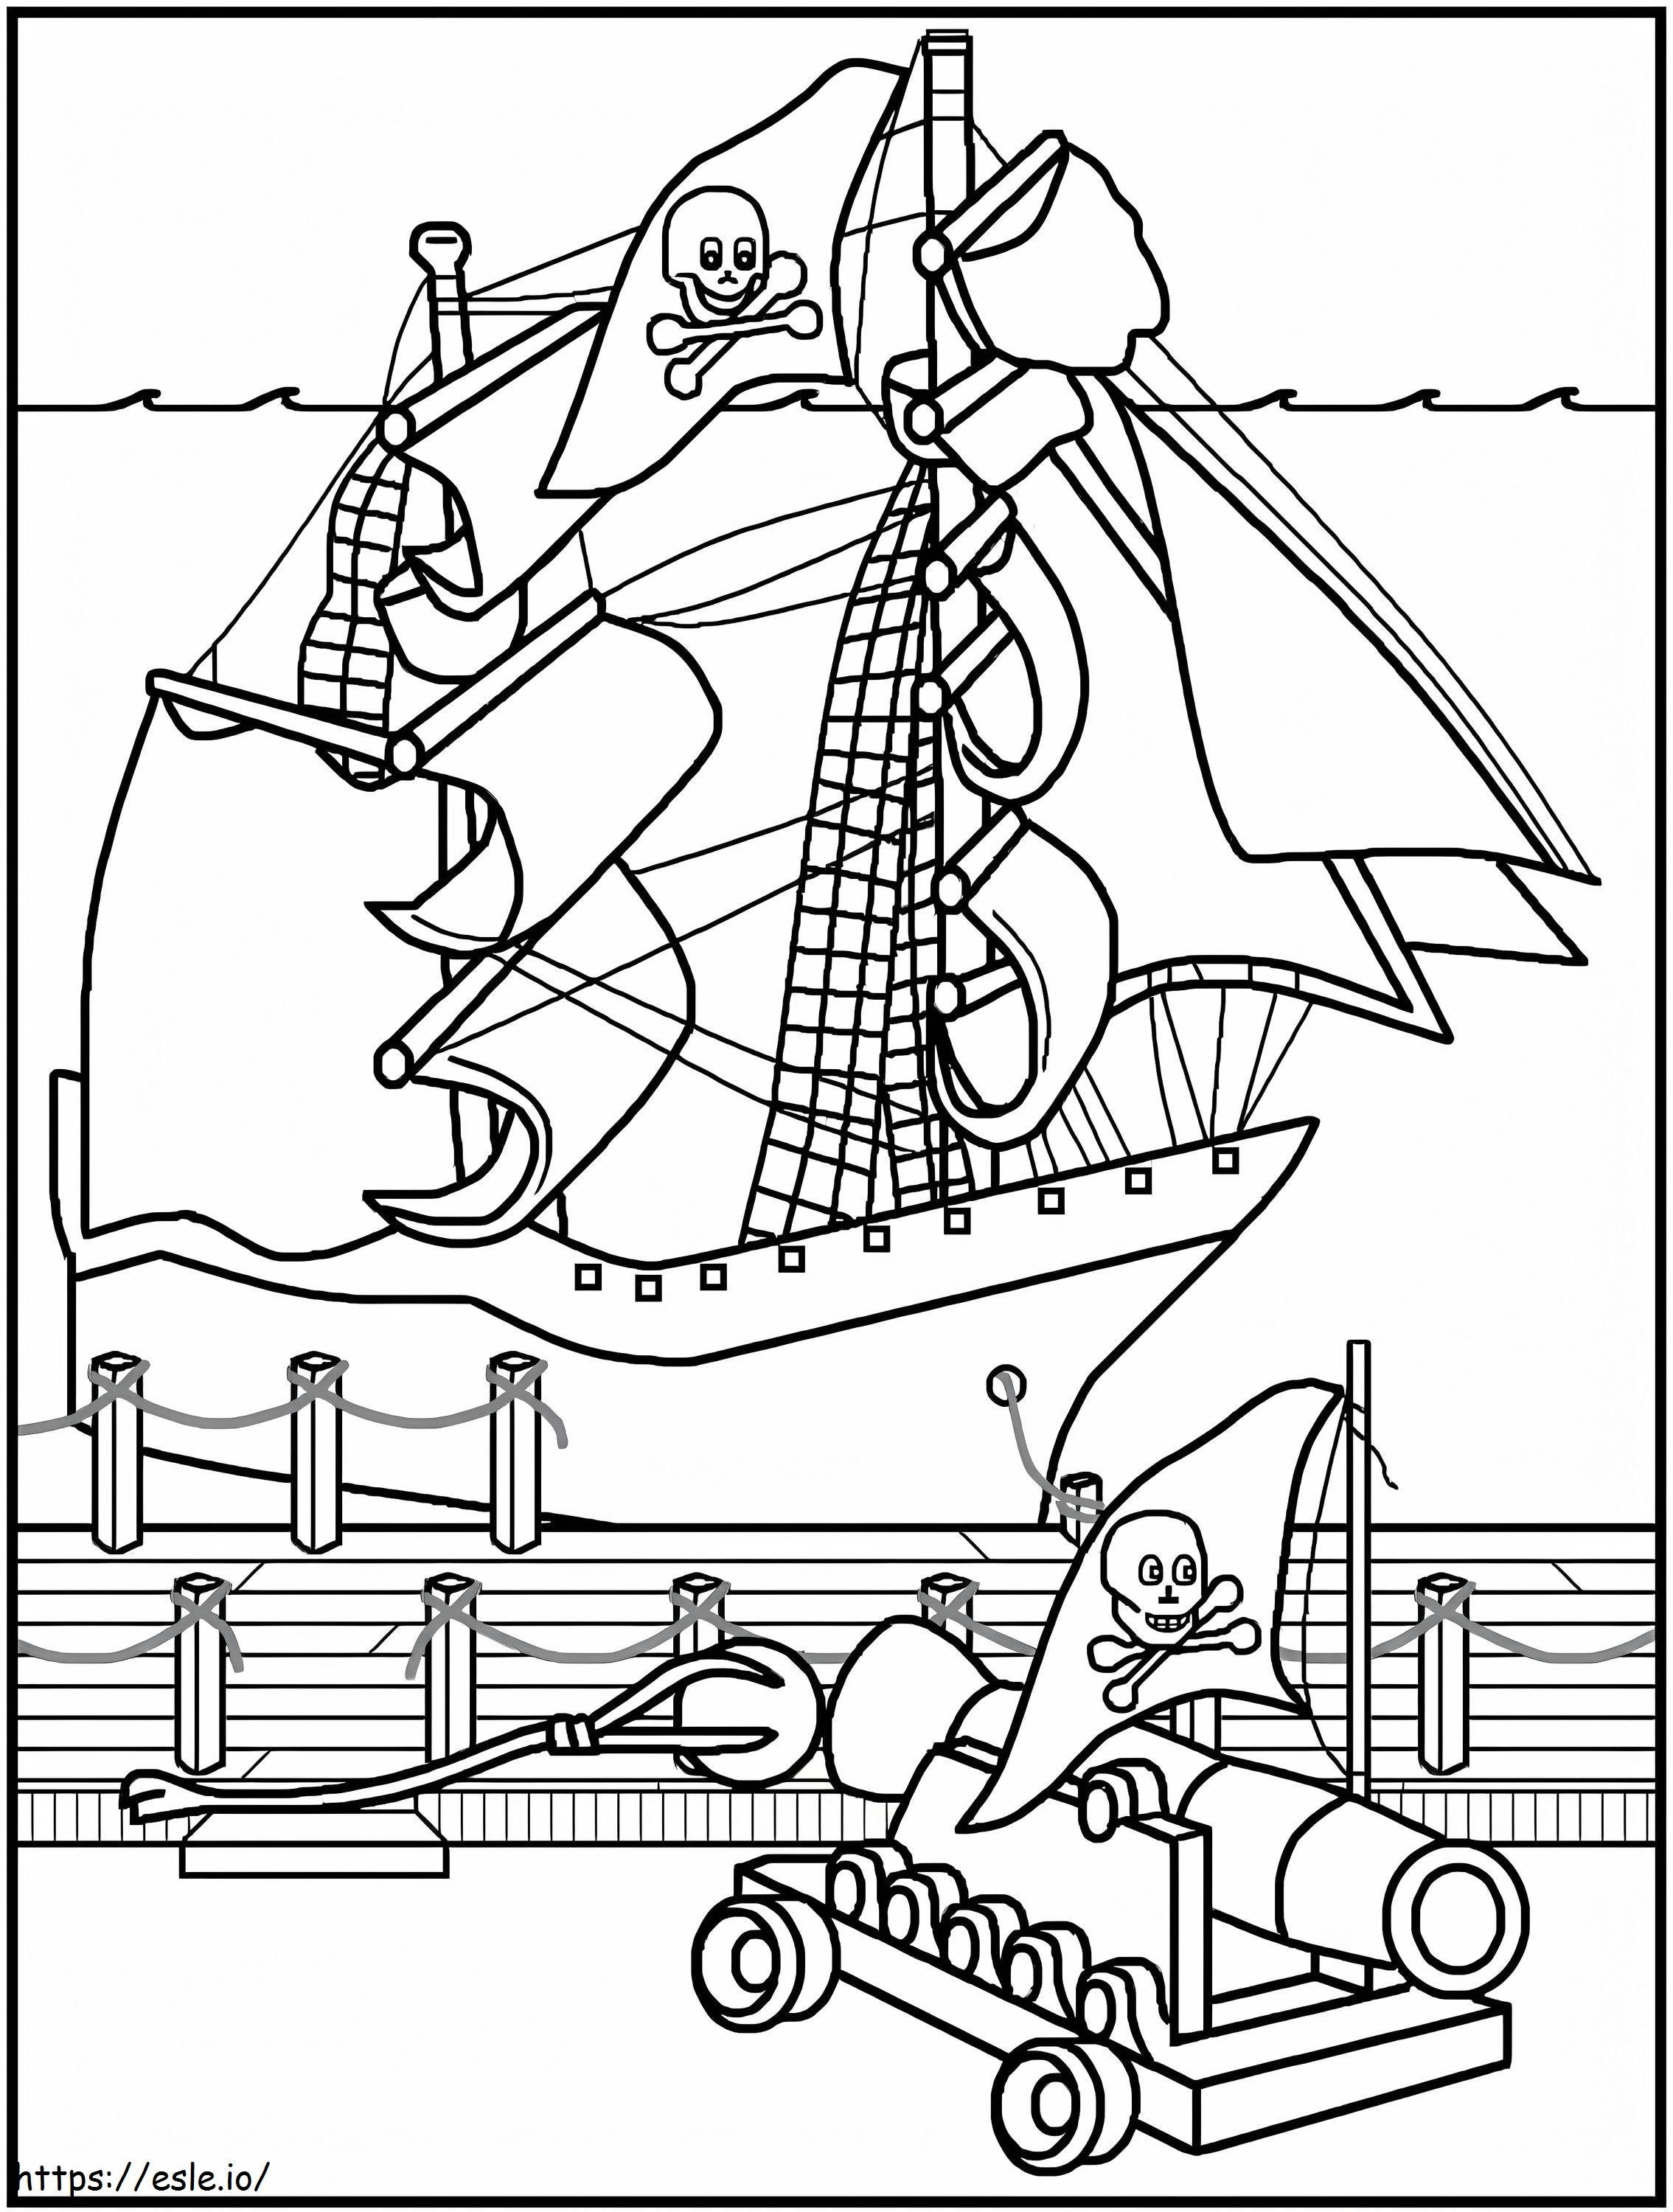 Statek Piracki Z Wielkim Kanonem kolorowanka